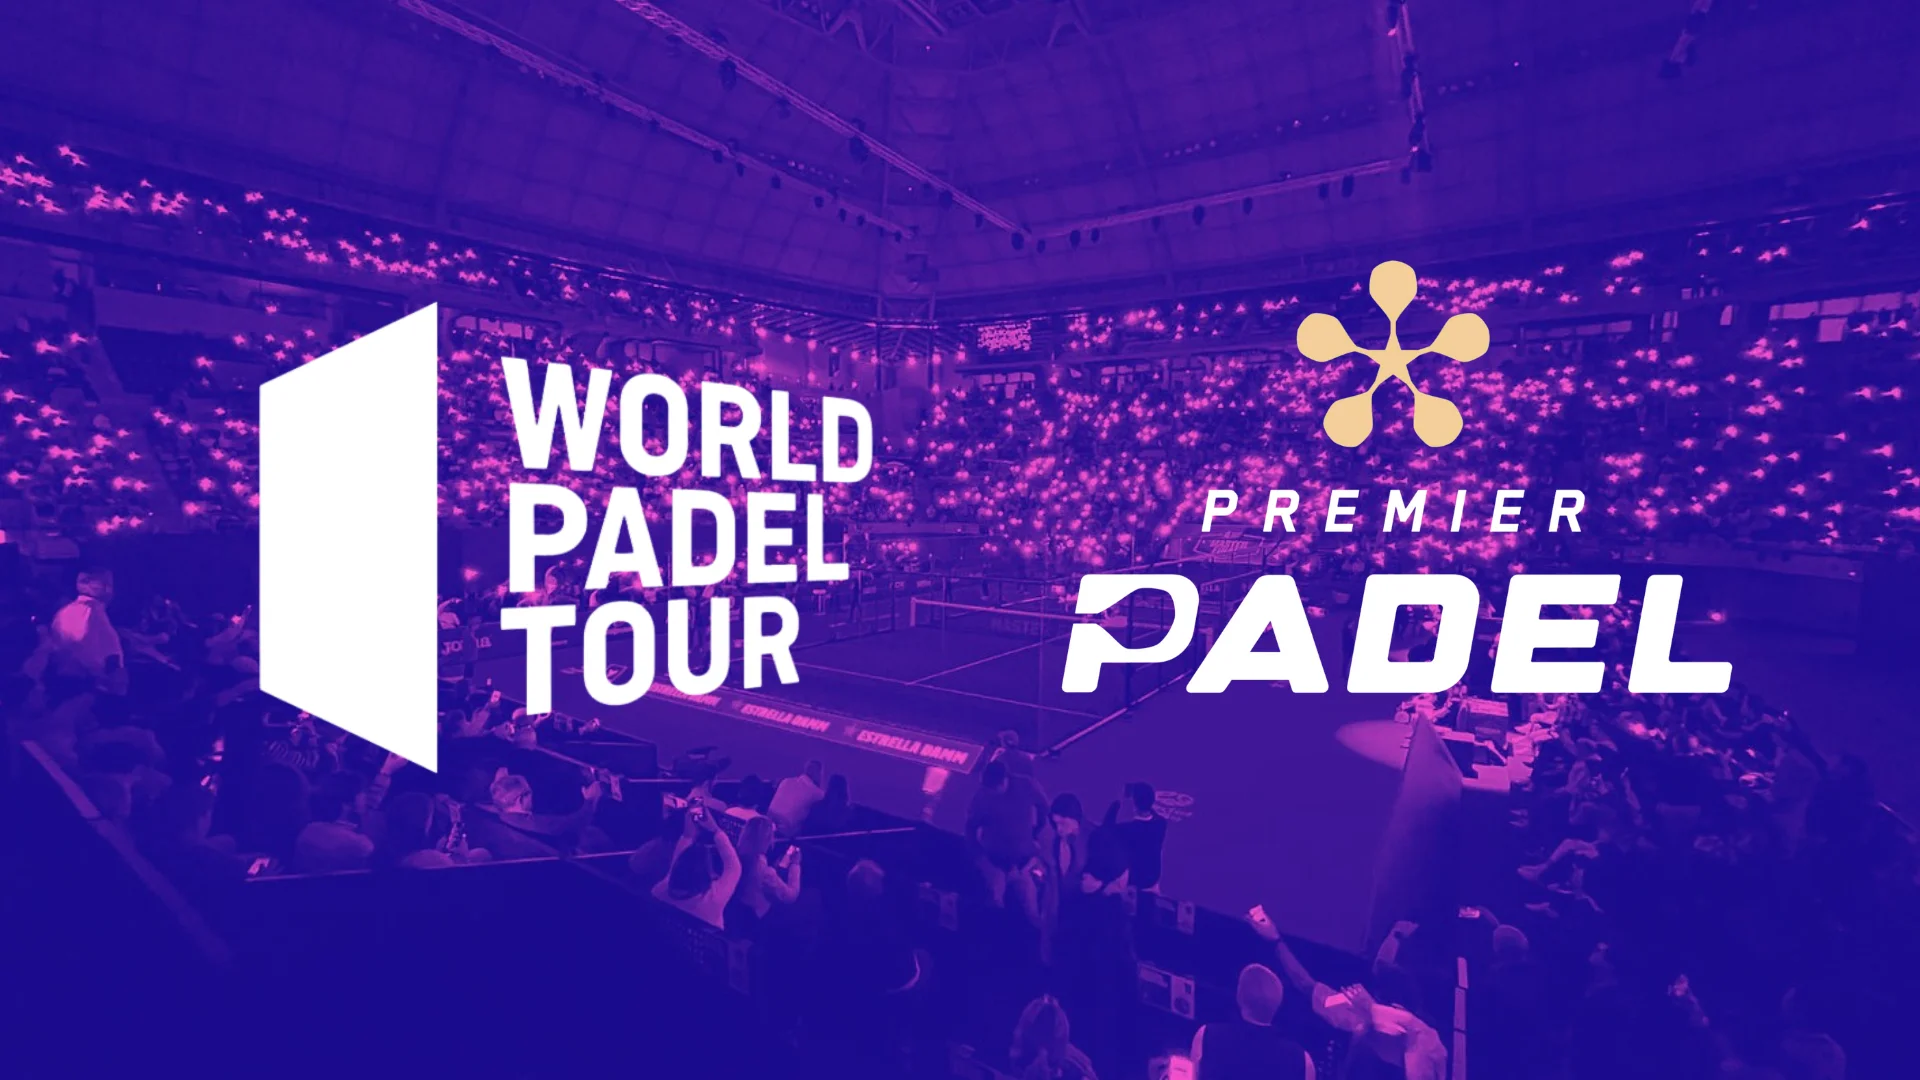 Le World Padel Tour et Premier Padel peuvent-ils vraiment ne faire qu’un ?